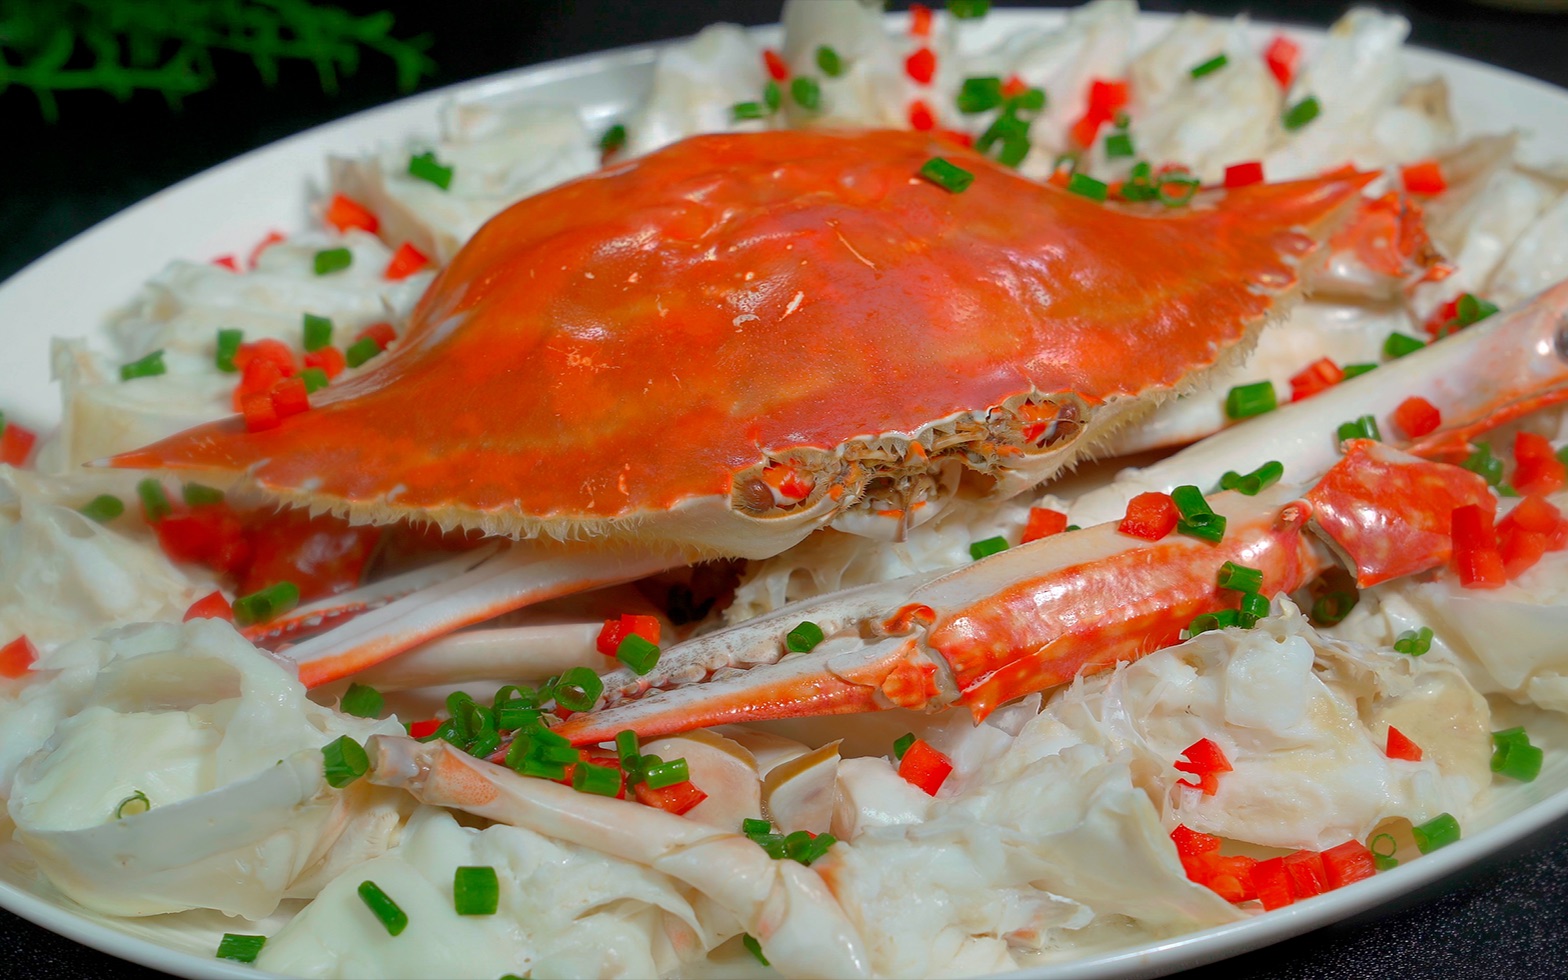 梭子蟹我认为最好吃的做法就是清蒸了，不仅肉质饱满，又能保留蟹的原汁原味